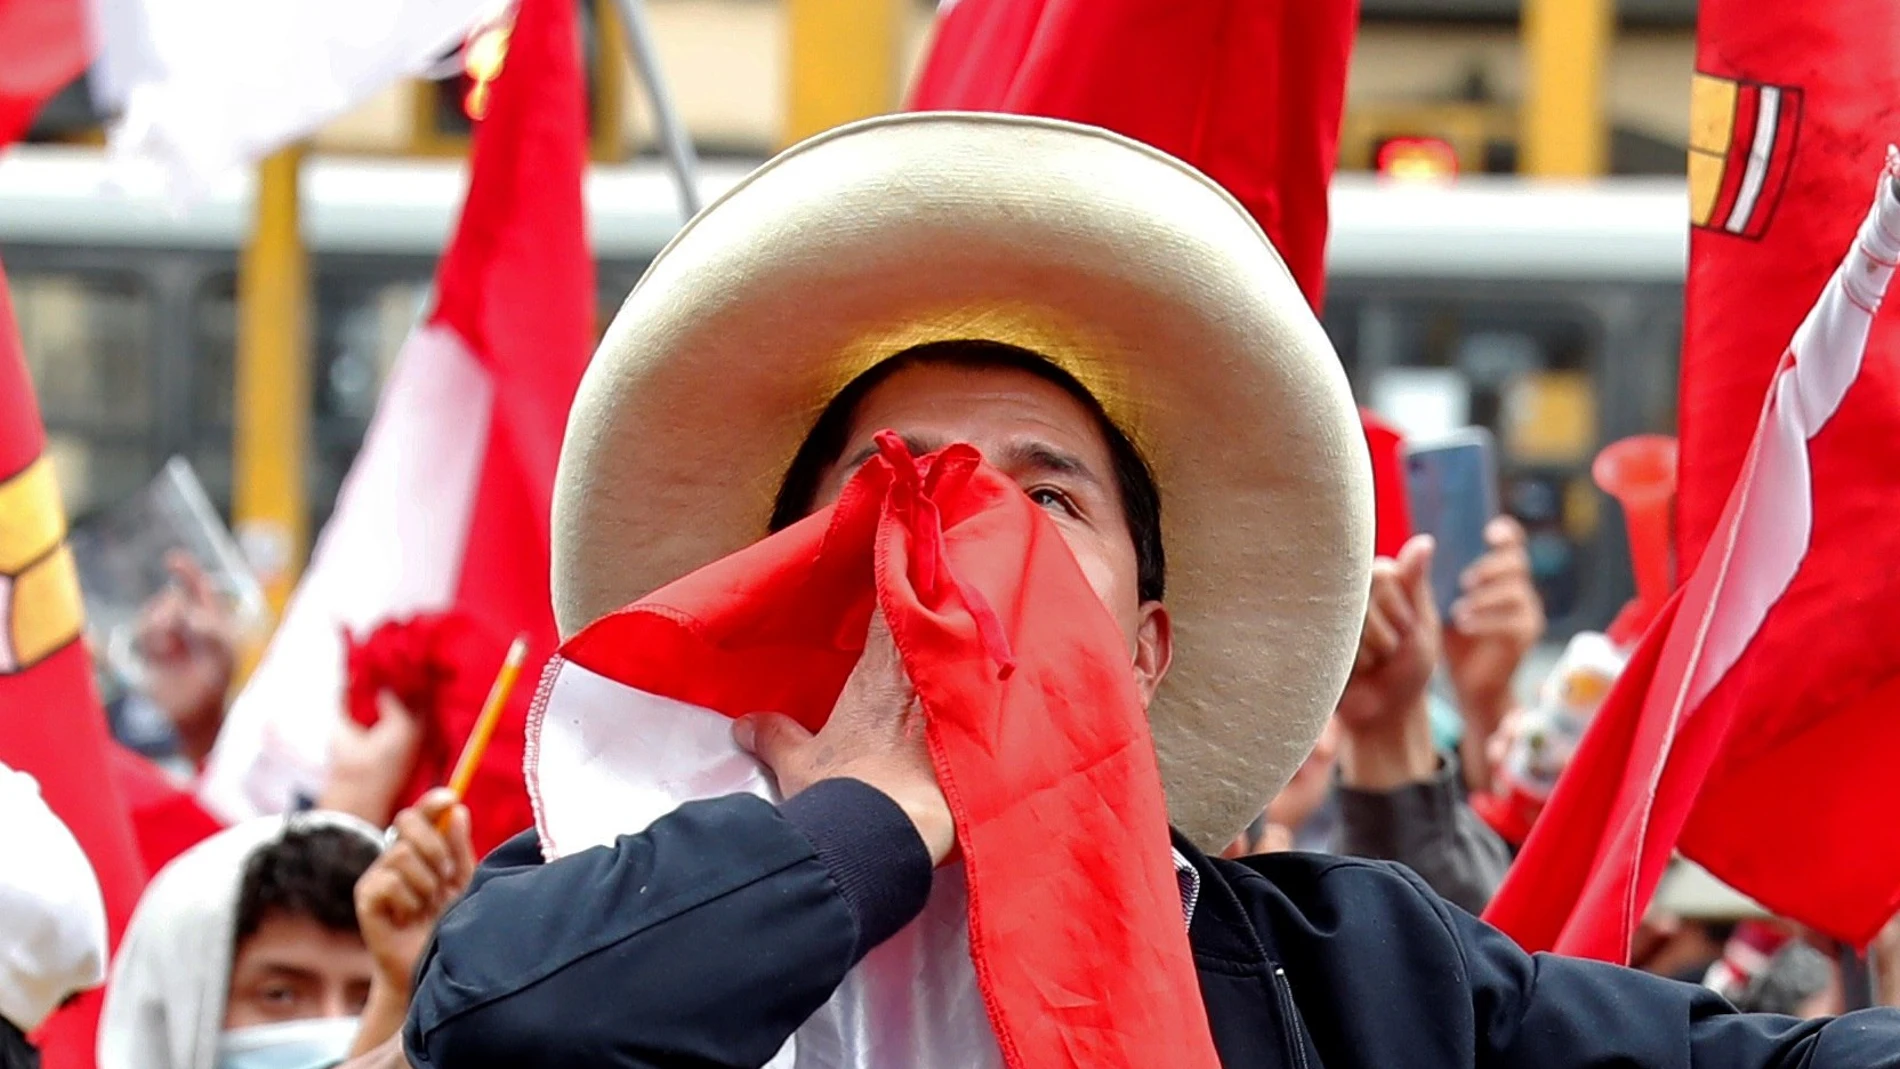 El candidato presidencial Pedro Castillo celebra junto a sus simpatizantes tras colocarse a la cabeza en el ajustado recuento de votos de las elecciones presidenciales, hoy, en las calles de Lima (Perú).